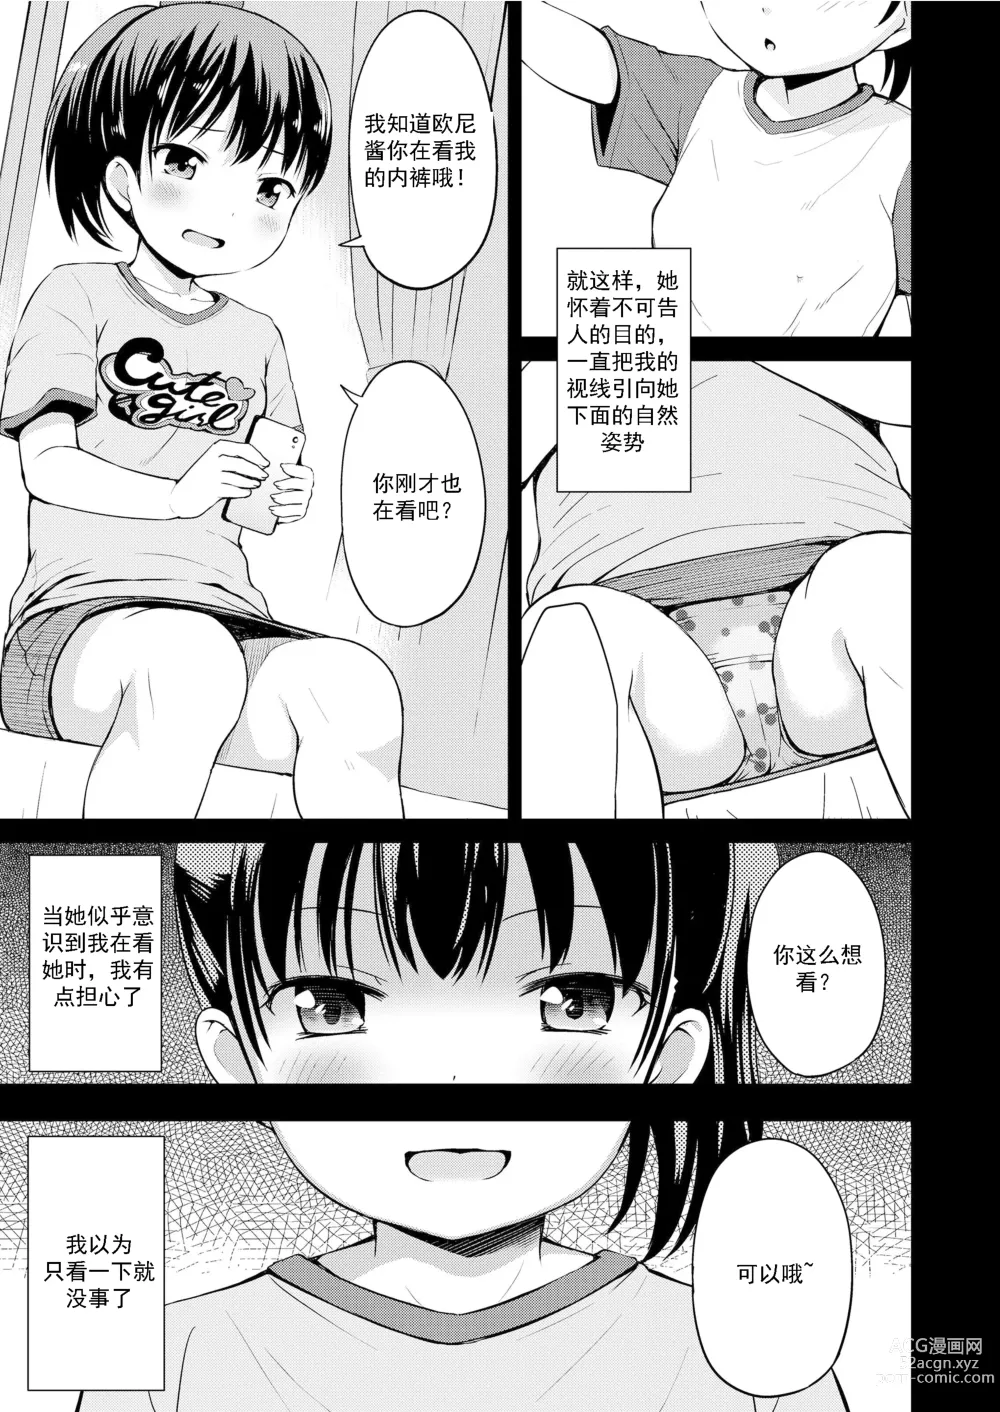 Page 6 of manga 